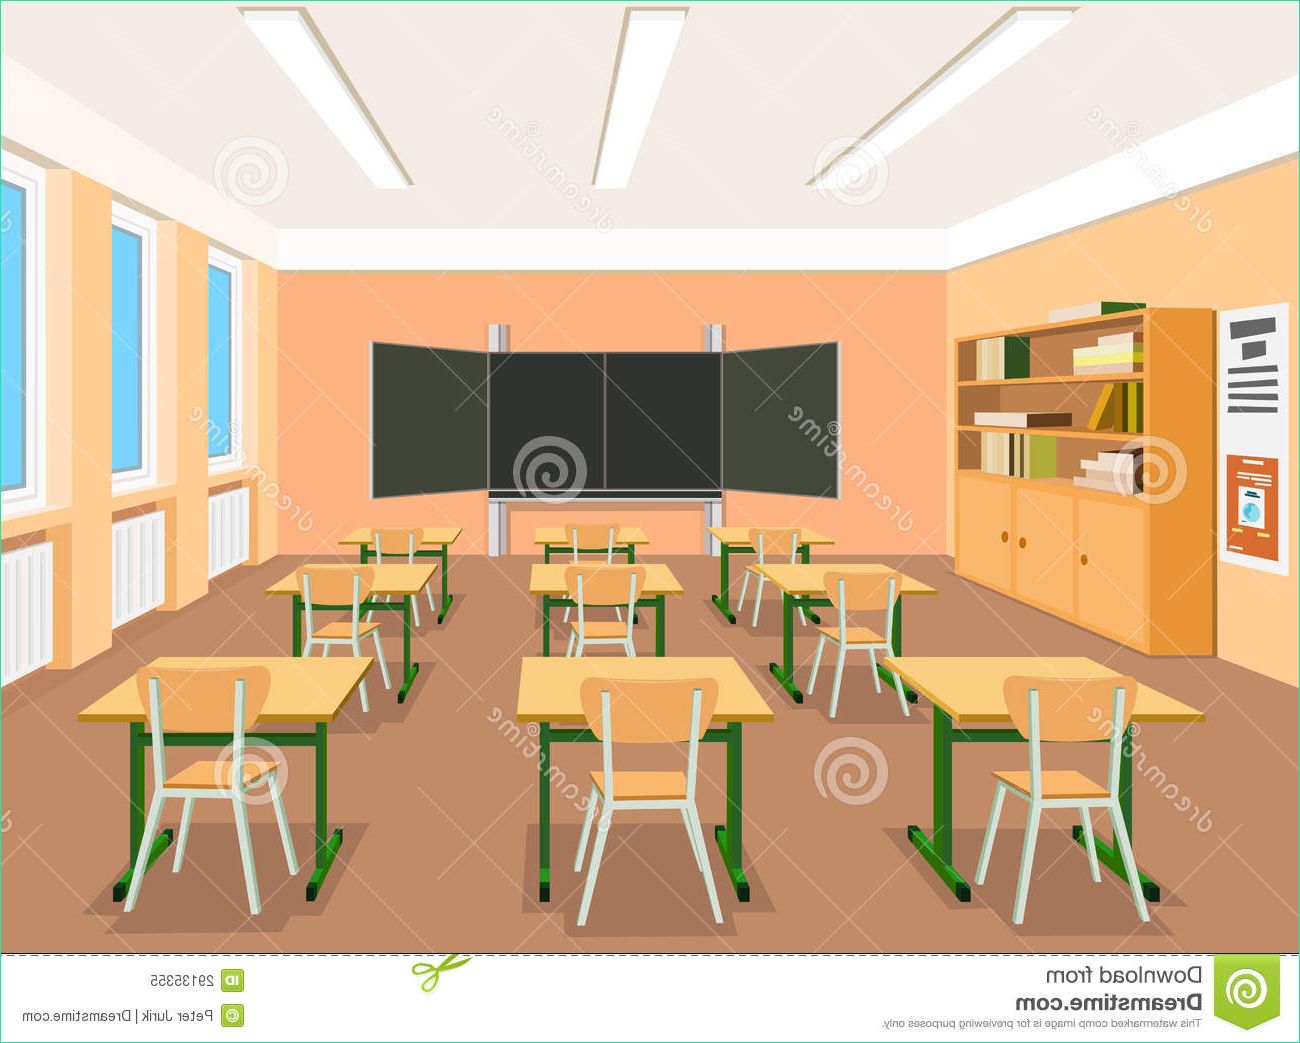 photo libre de droits illustration d une salle de classe vide image